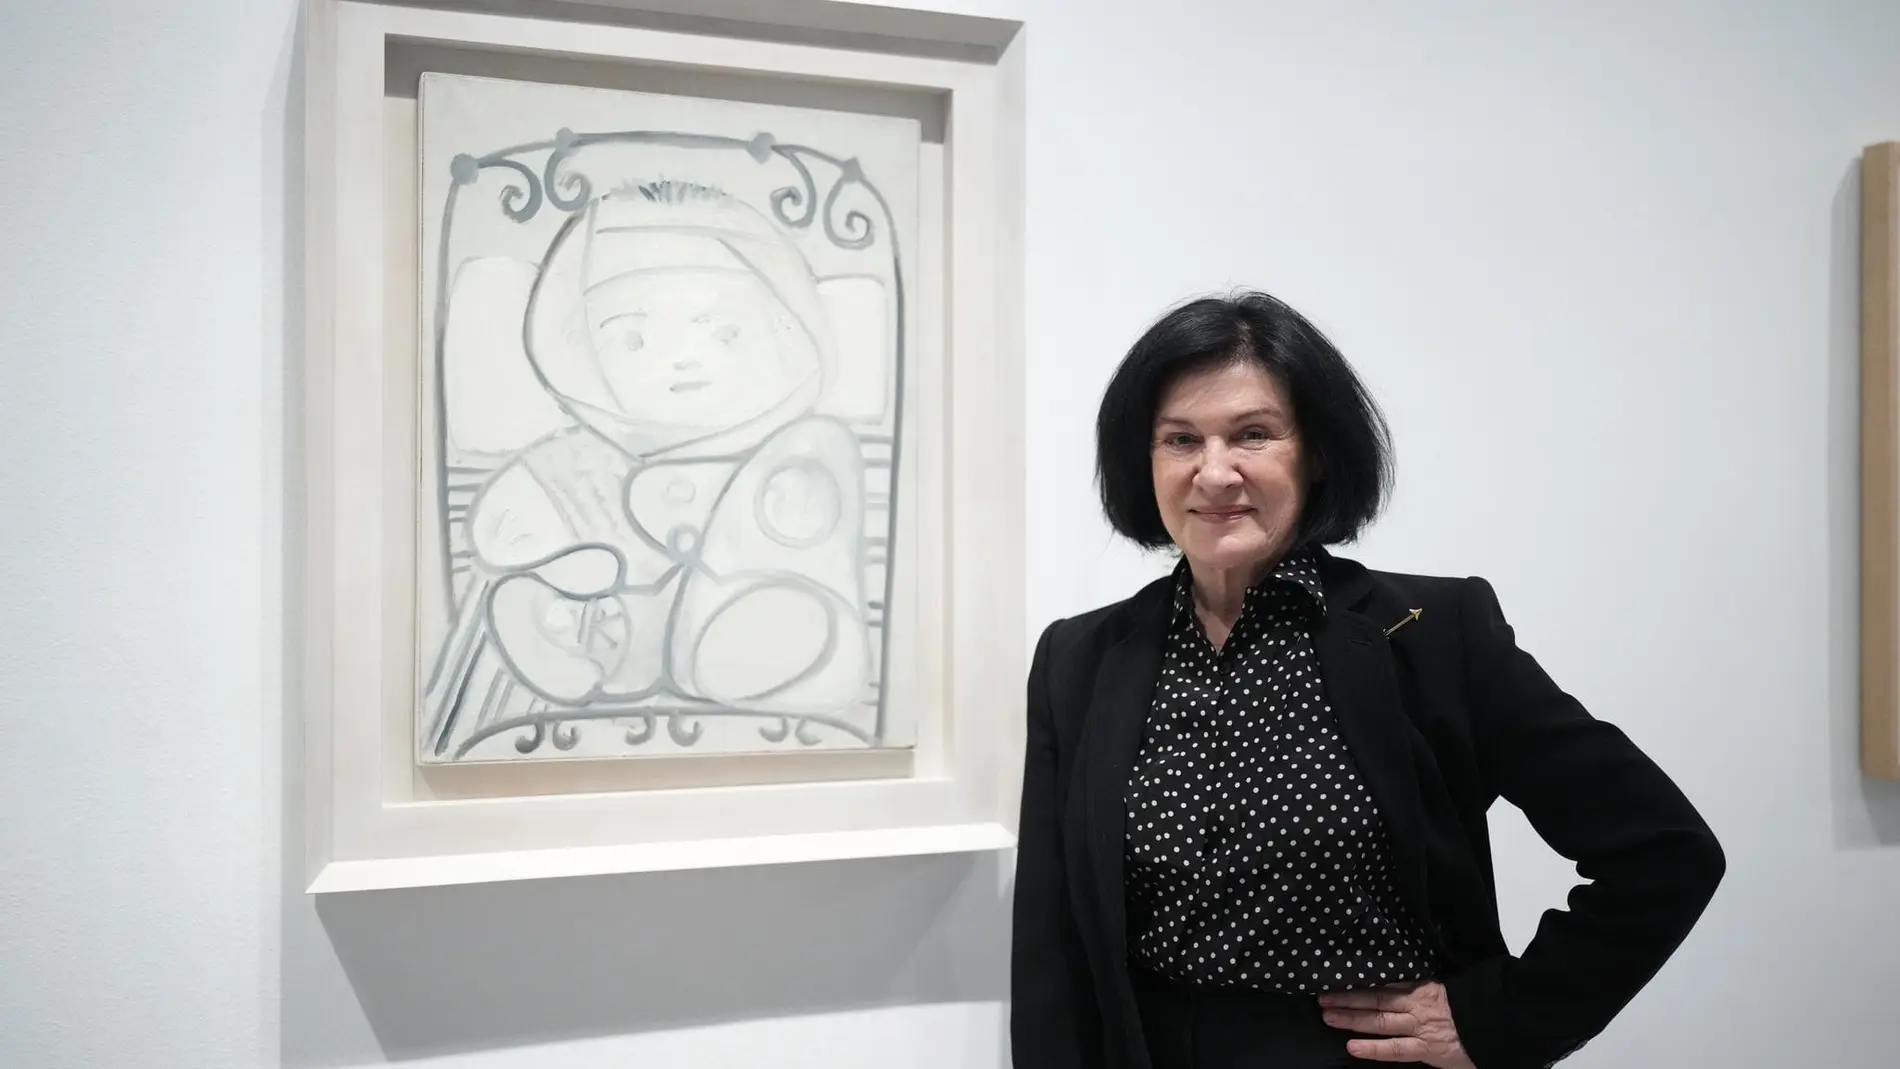 Paloma Picasso ante el retrato de su hermano Claude